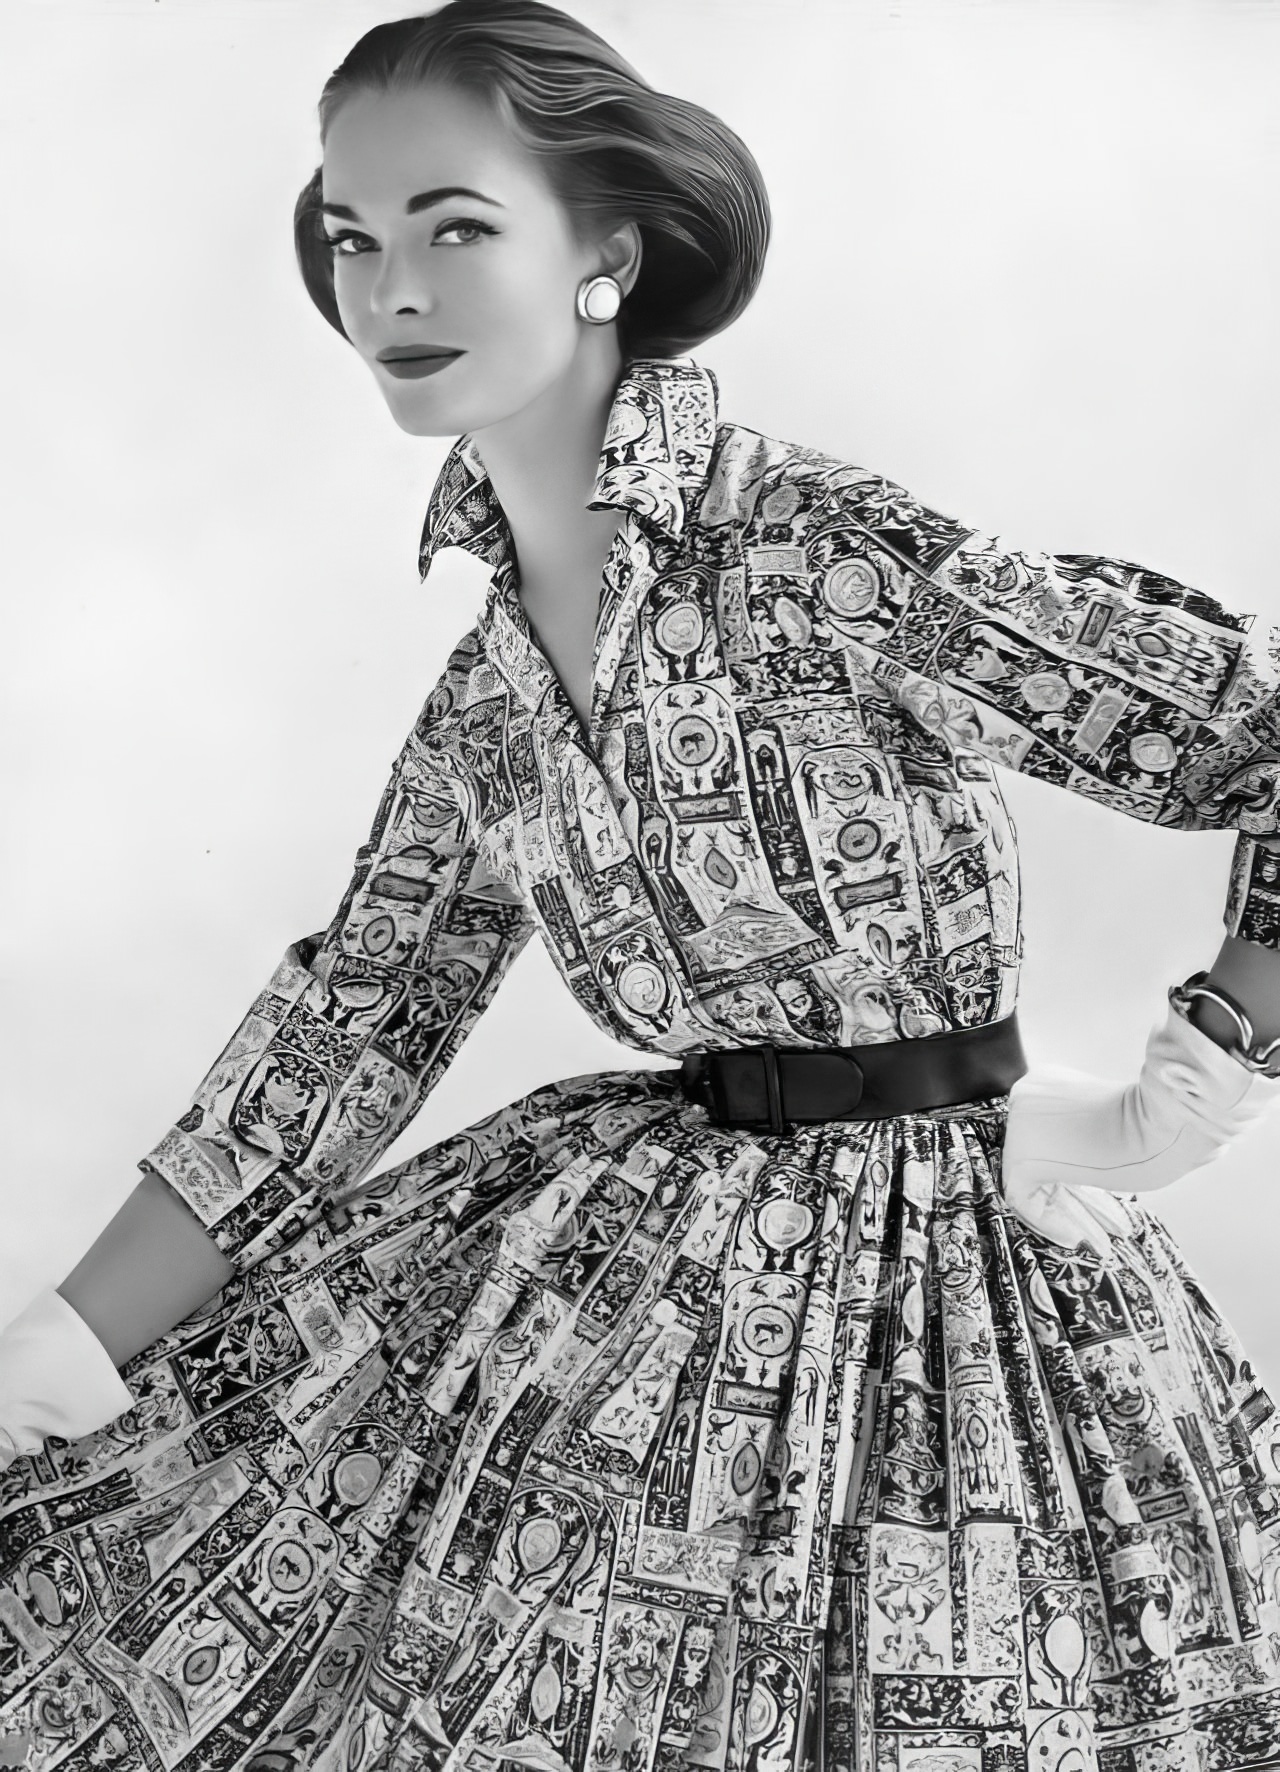 Susan Abraham in a bold cotton shirtwaist dress, 1957.